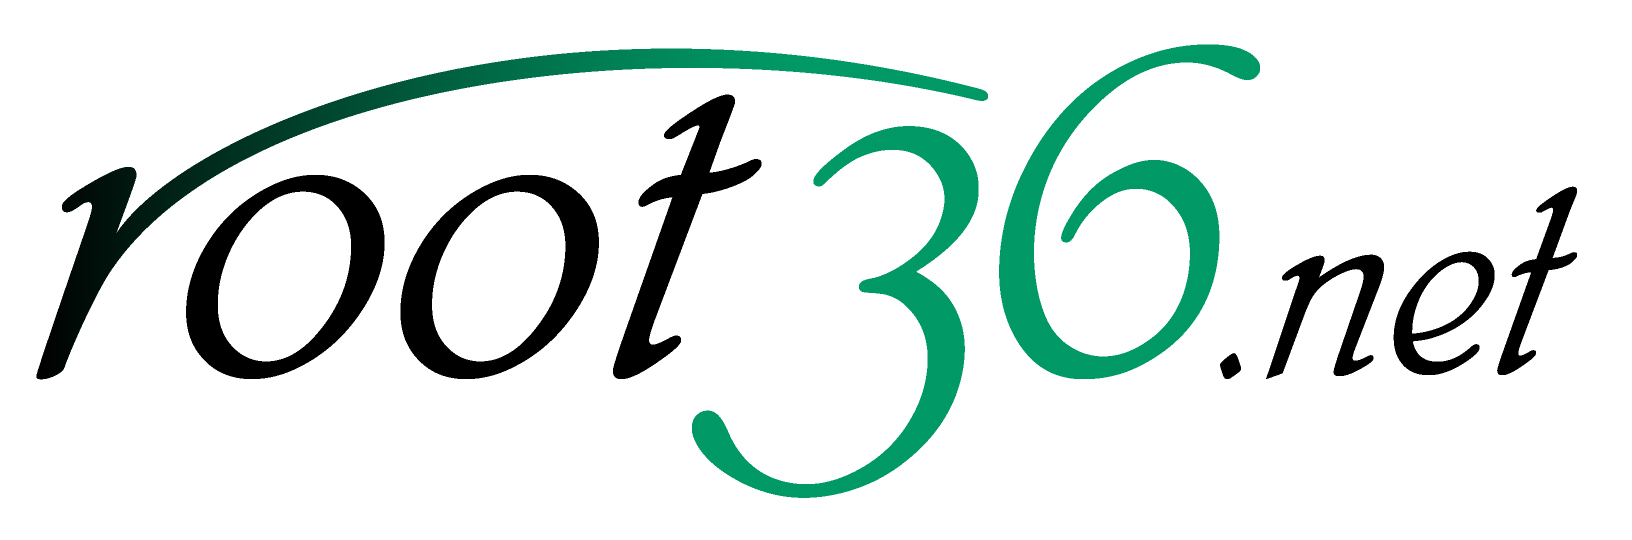 root36.net